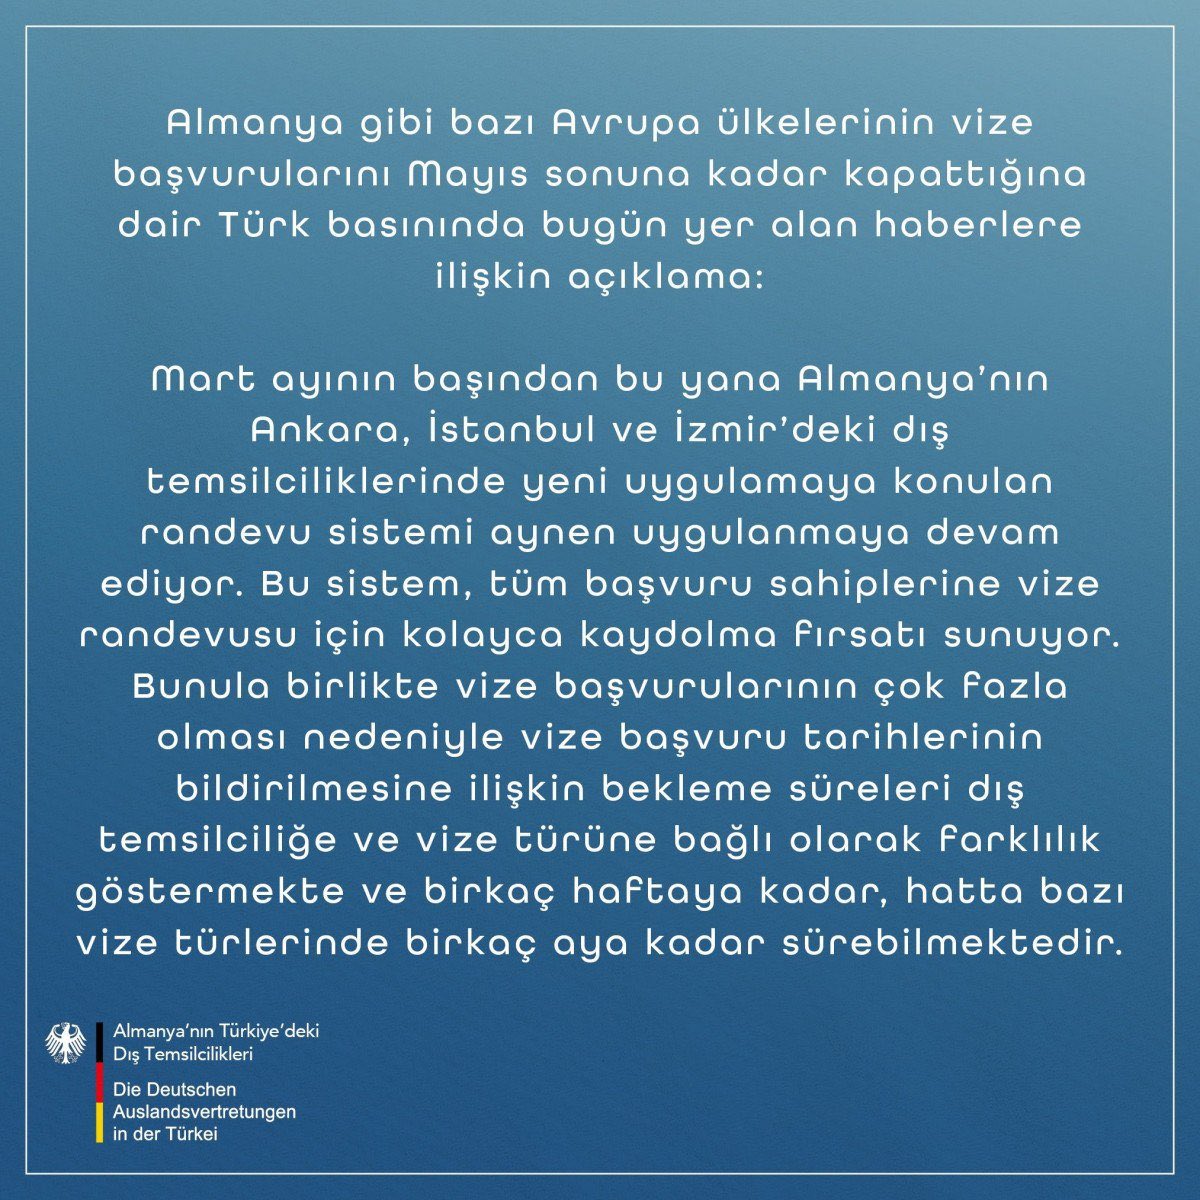 ✖️“Türk vatandaşlarına vize başvuruları kapatıldı” iddiası yalan. ✅Büyükelçiliklerde, vize başvurularındaki yoğunluk nedeniyle randevular ileri tarihlere sarkabiliyor ve bu sorunu aşmak için ilgili büyükelçilikler çalışmalarını sürdürüyor. Başvuruların kapatılması söz konusu